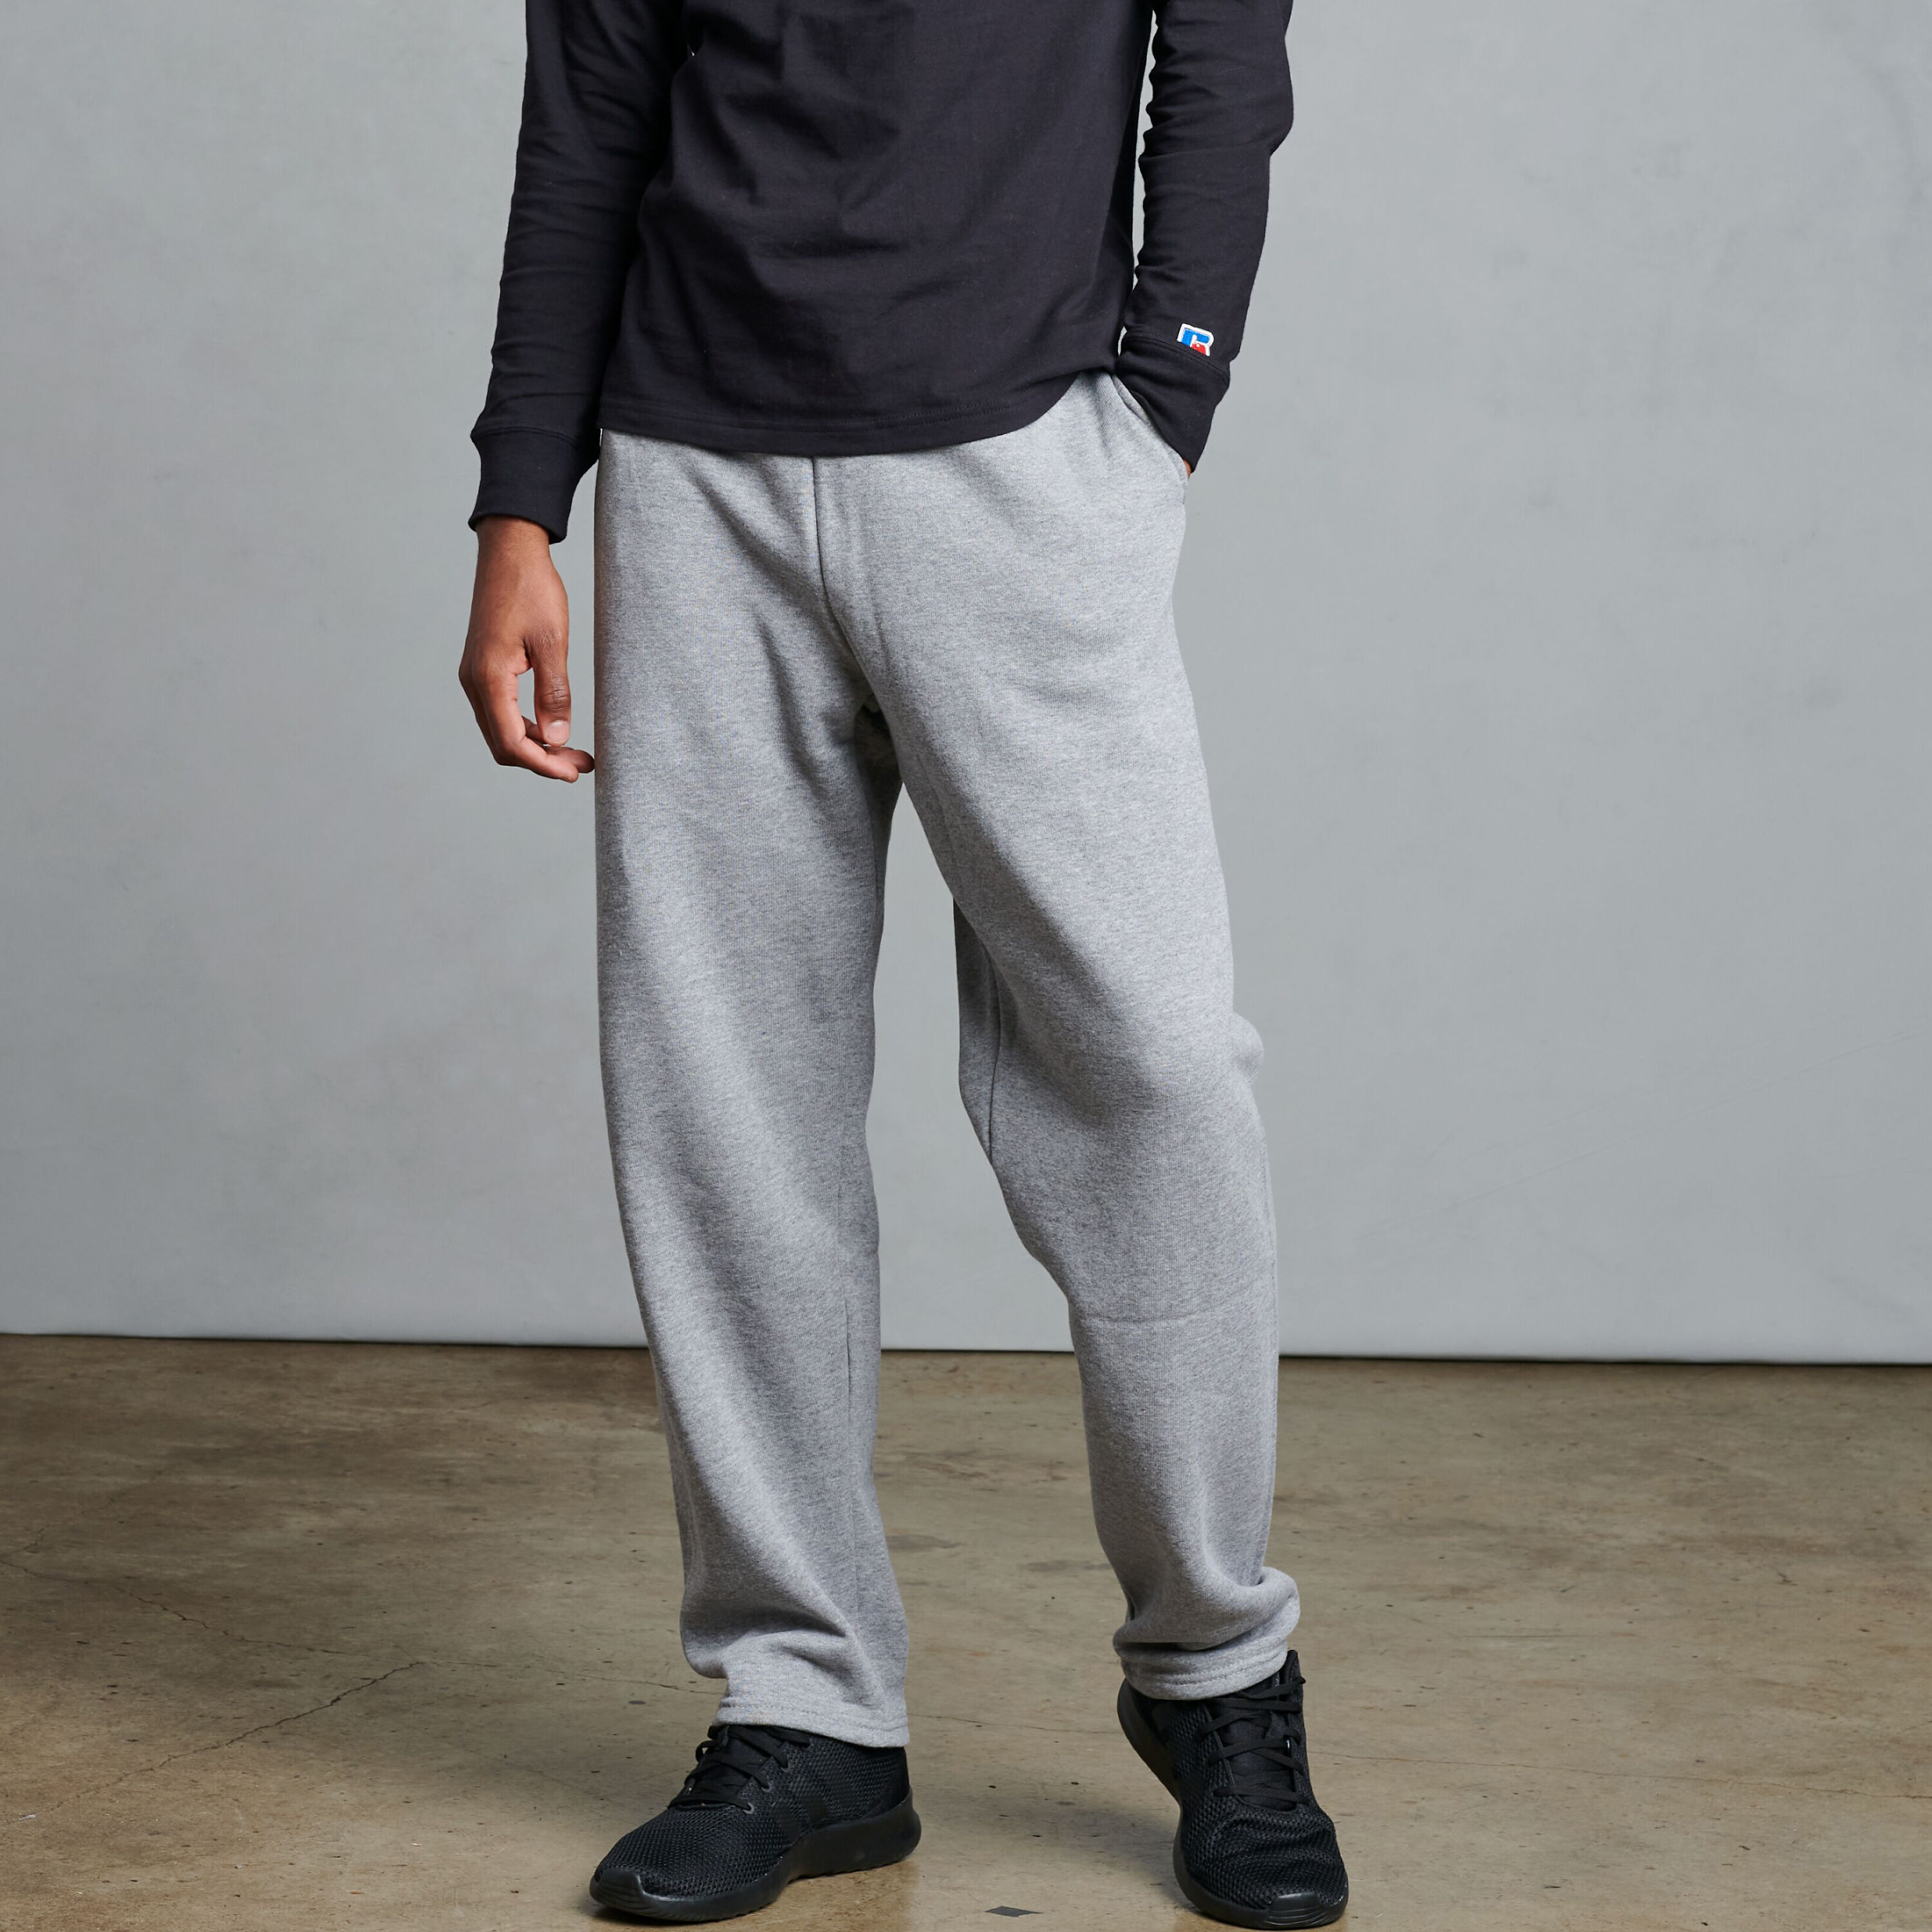 Men's Casual Hip Hop Sweatpants Trendy Baggy Sport Pants Trousers Plus Size